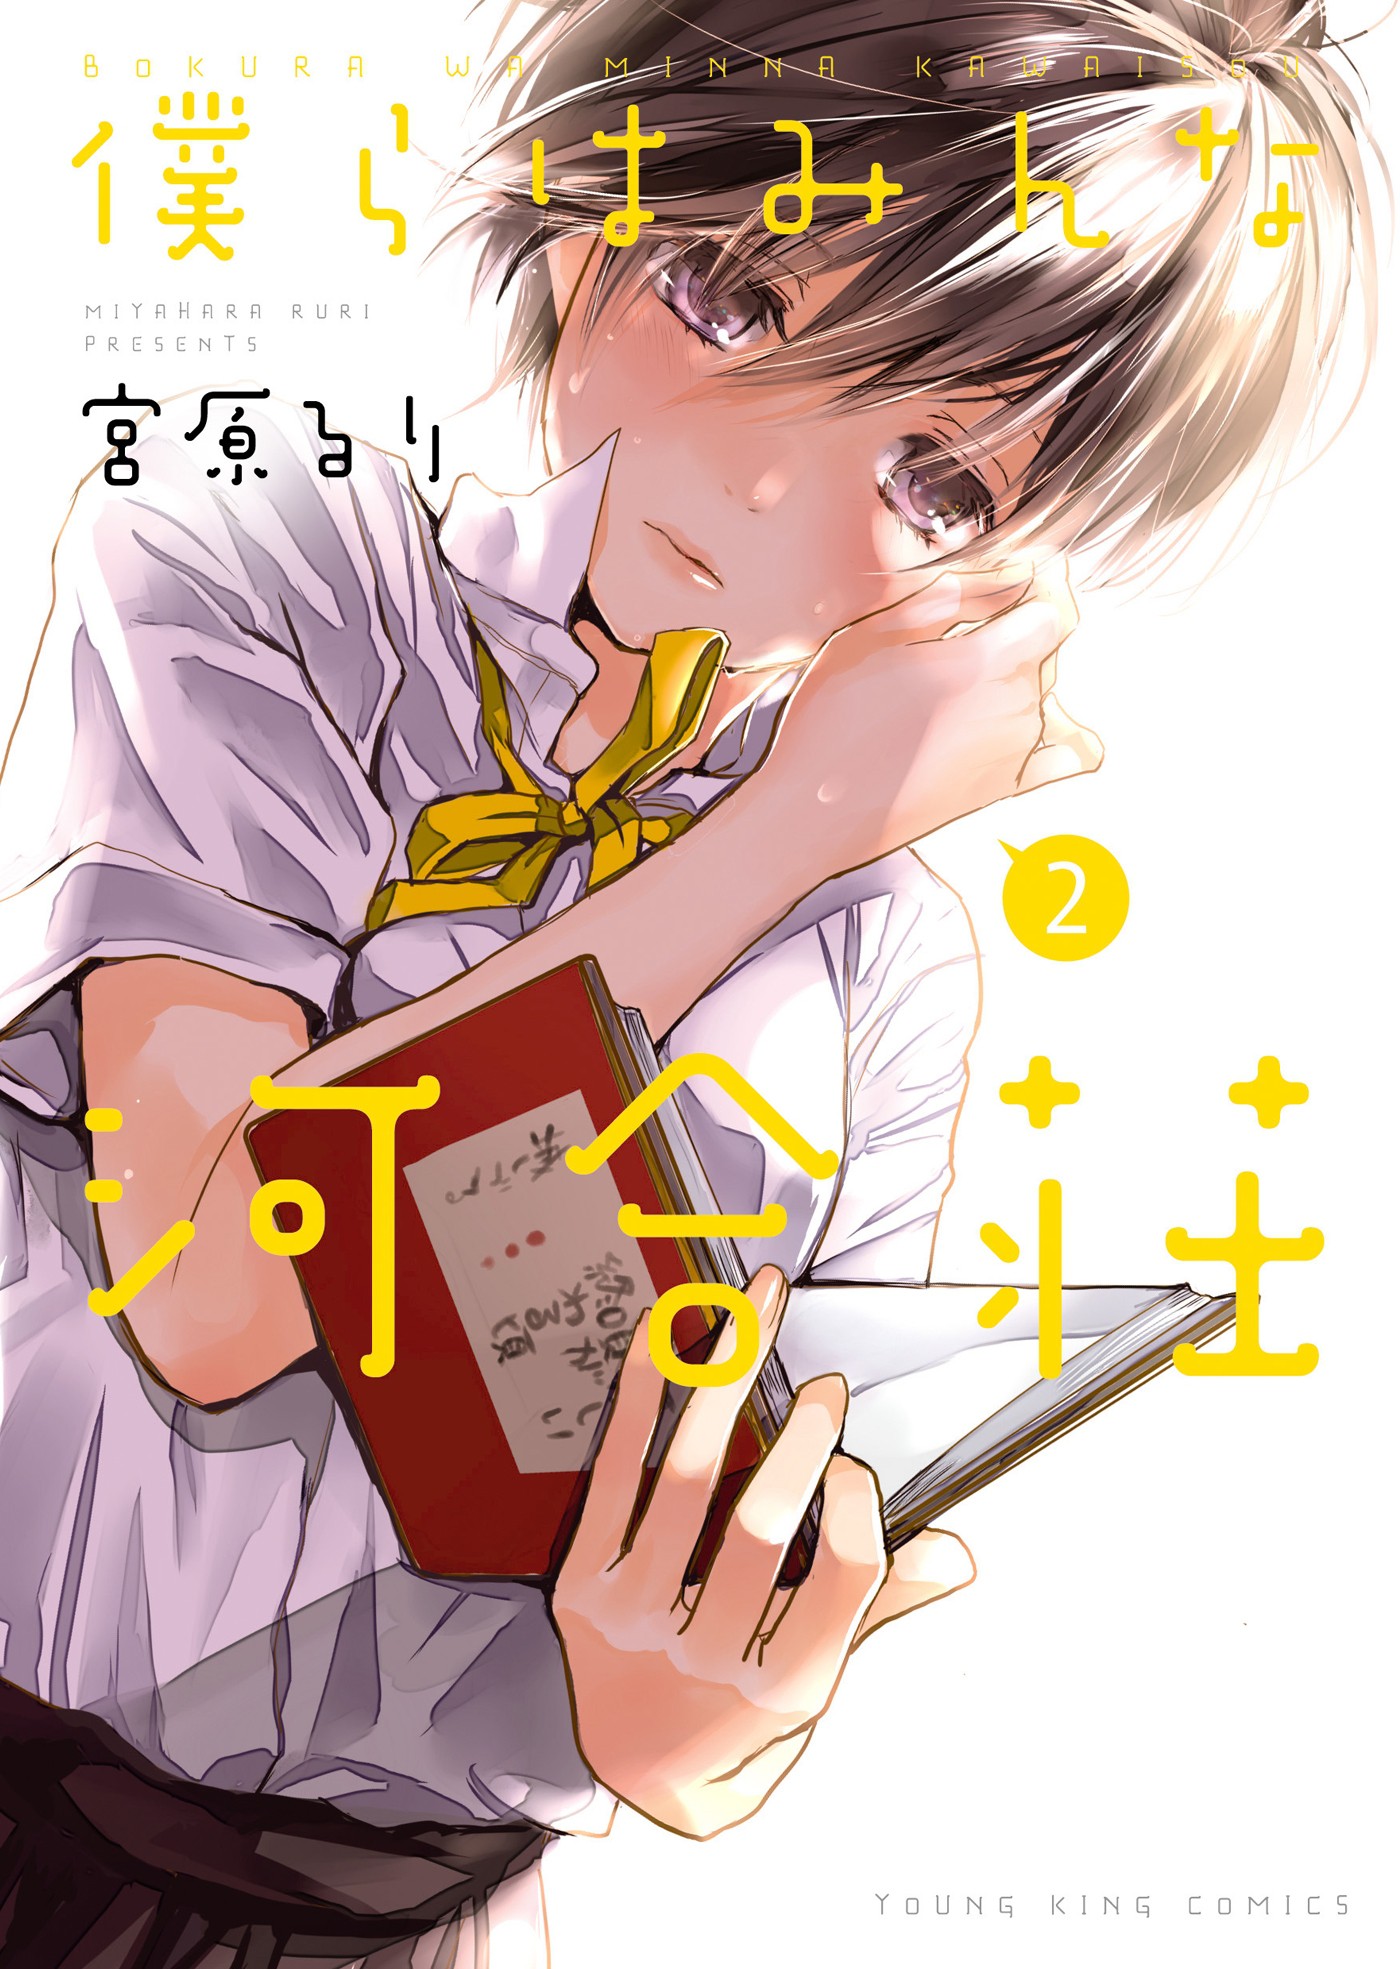 BOKURA WA MINNA KAWAISOU Chapter 90 - Novel Cool - Best online light novel  reading website